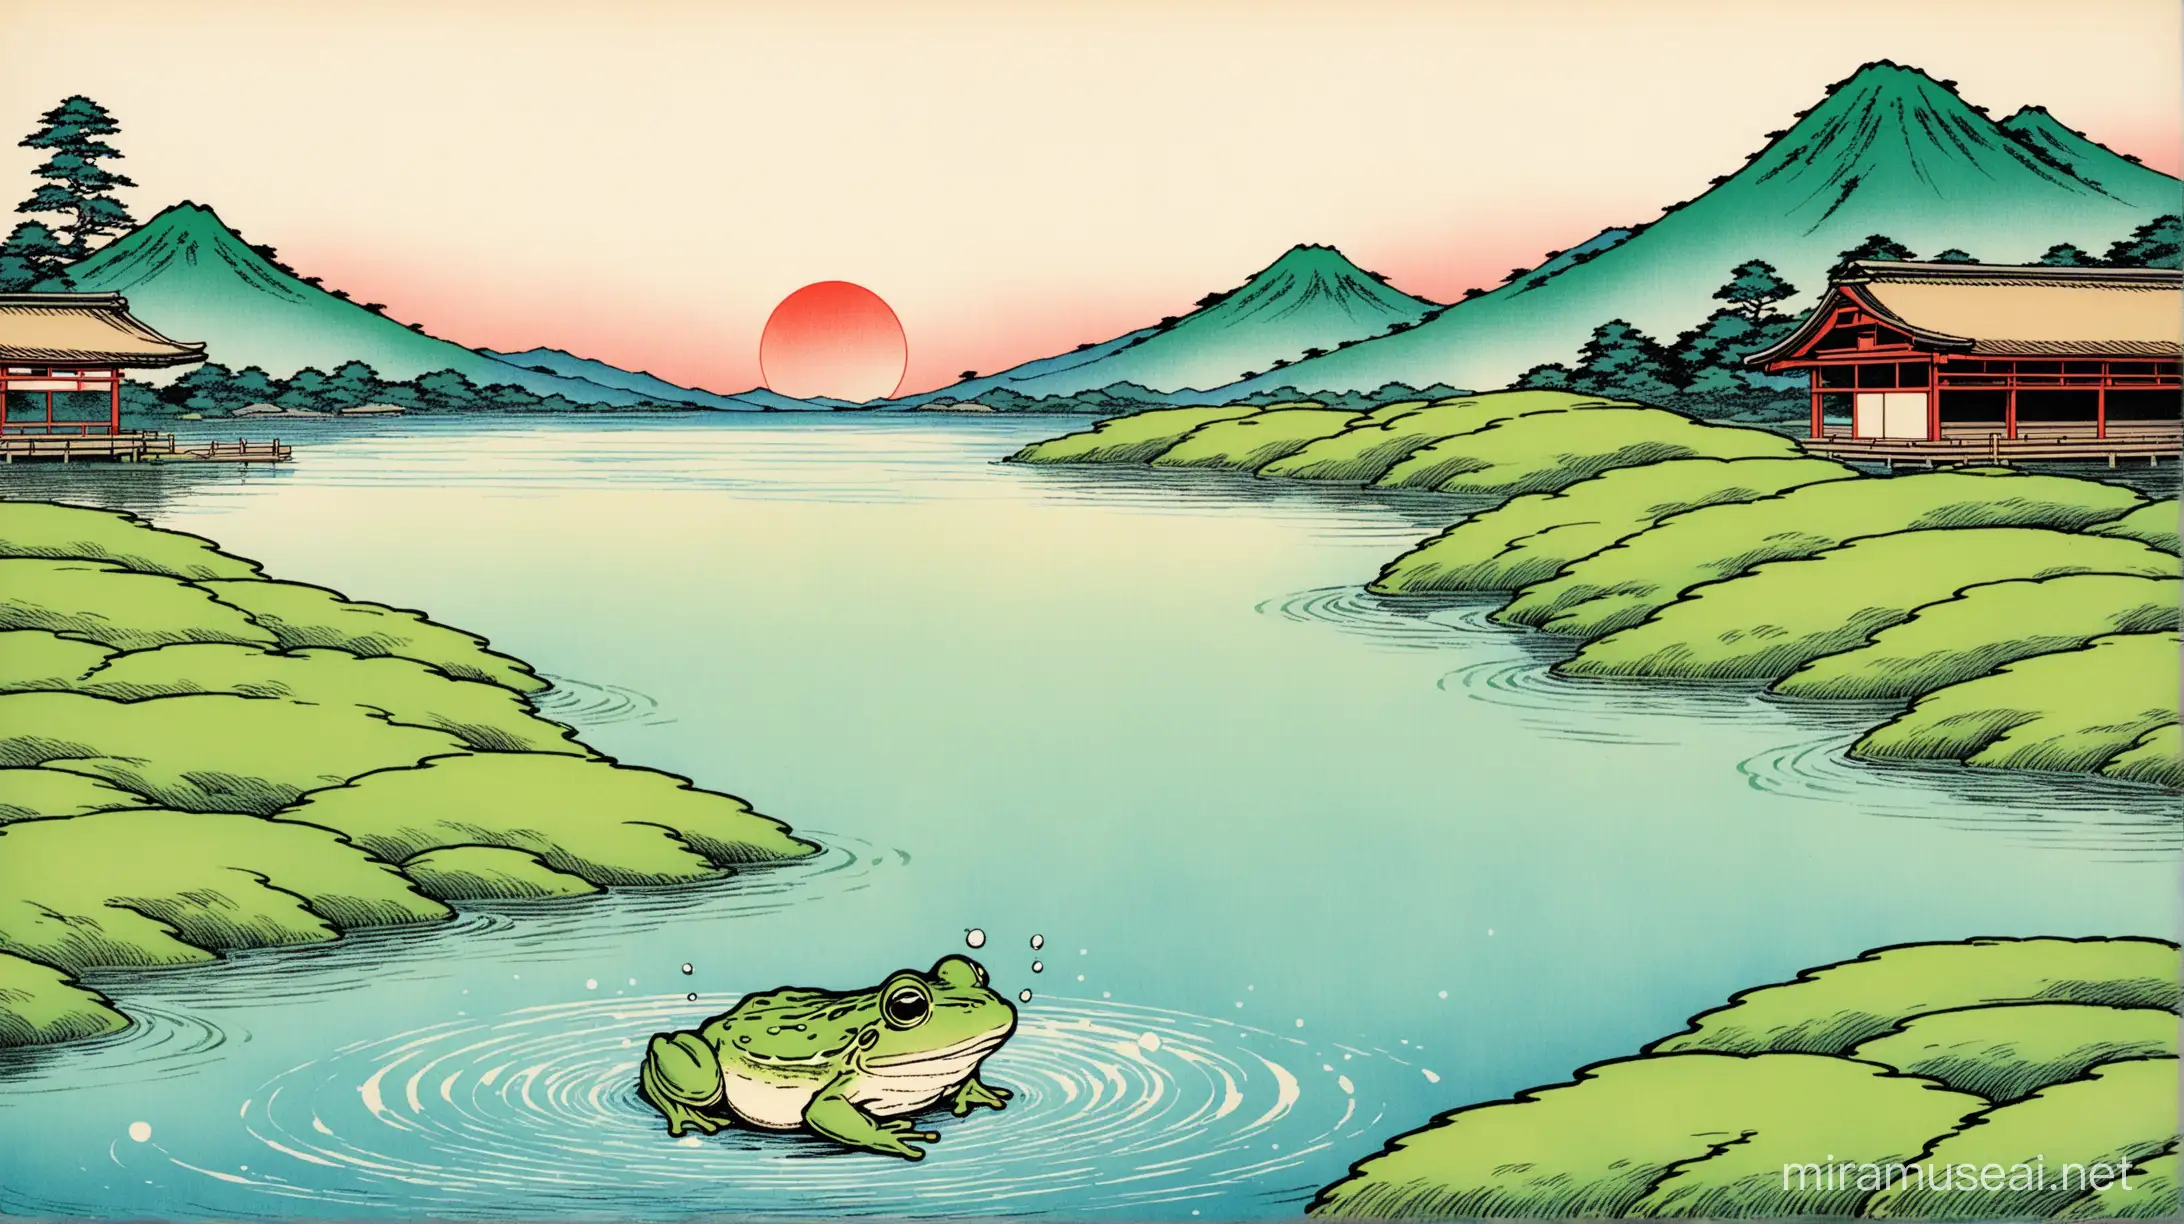 古池 / 蛙飛び込む / 水の音. Hukusai style 